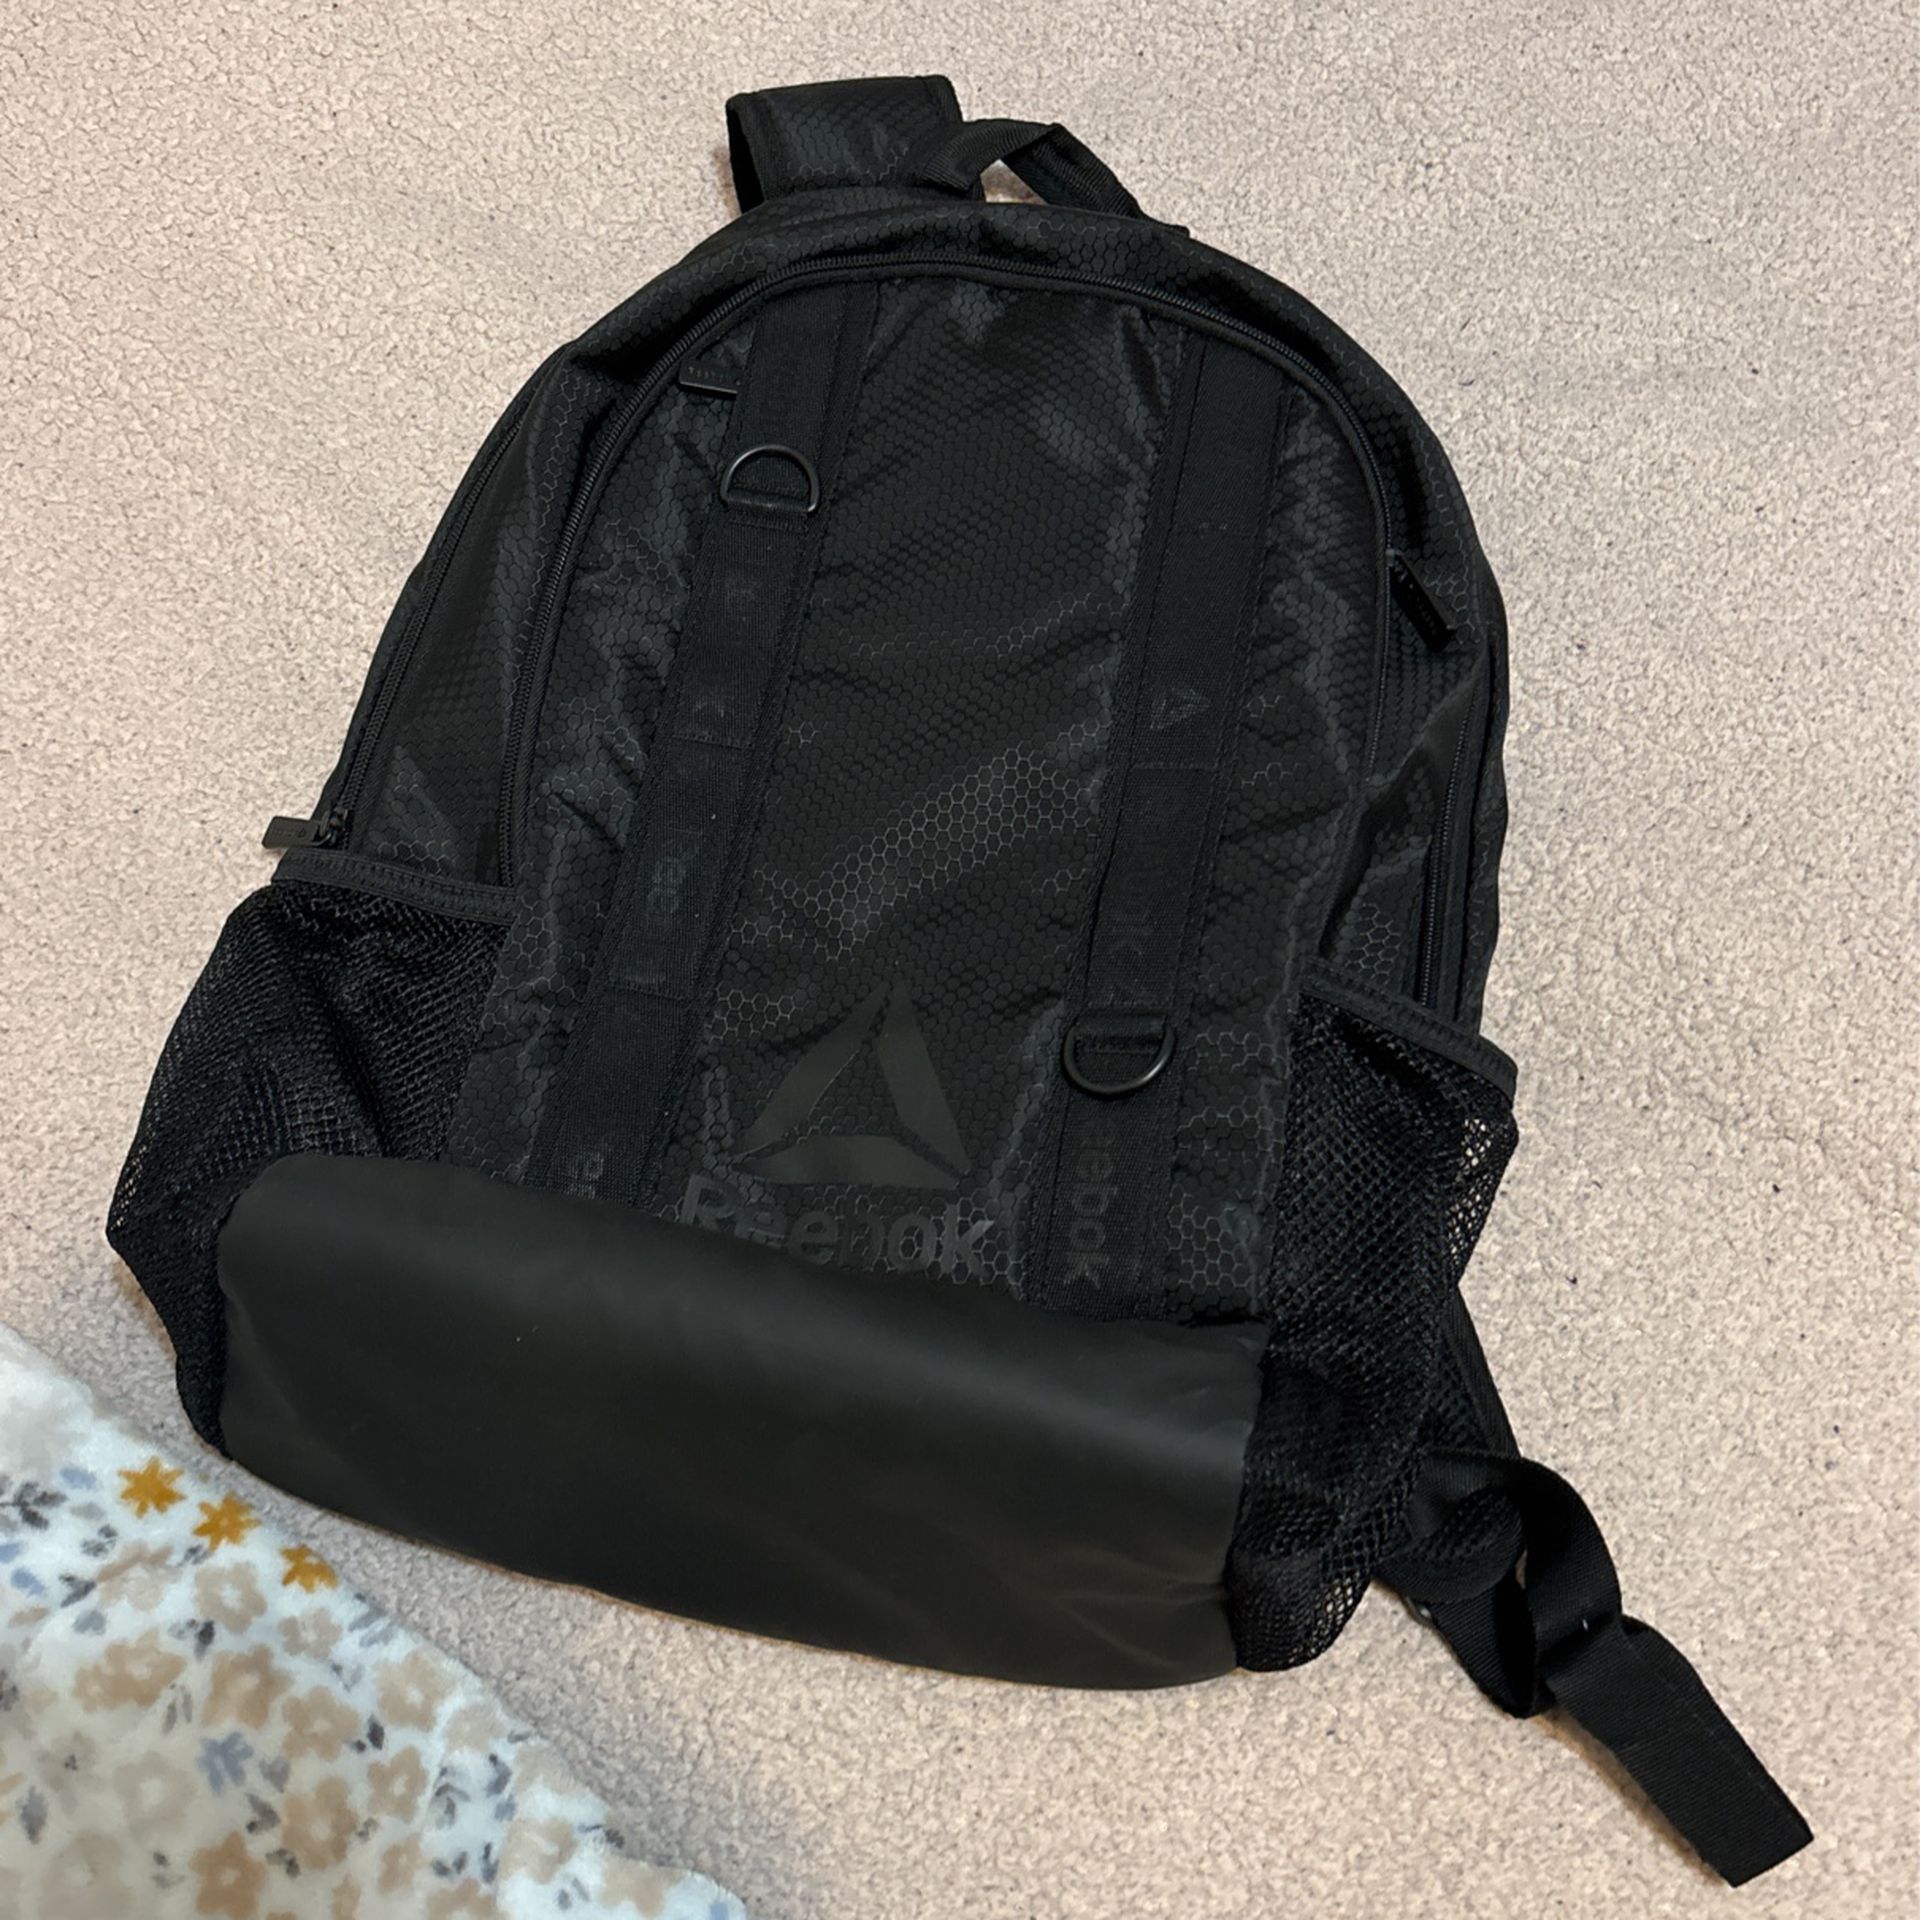 New Reebok Backpack